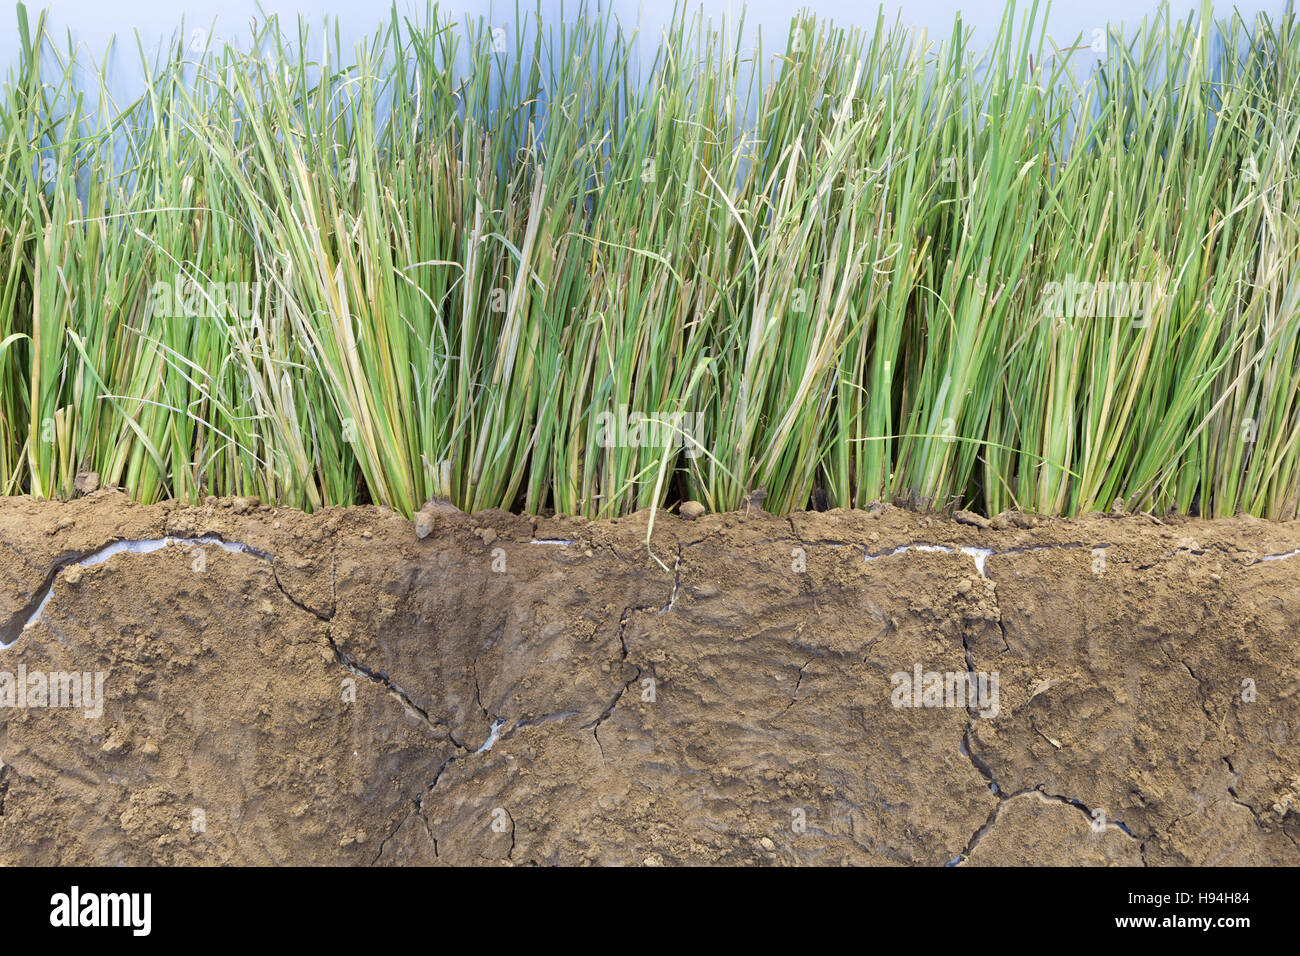 vetivar grass for preventing soil erosion from heavy rain fall Stock Photo